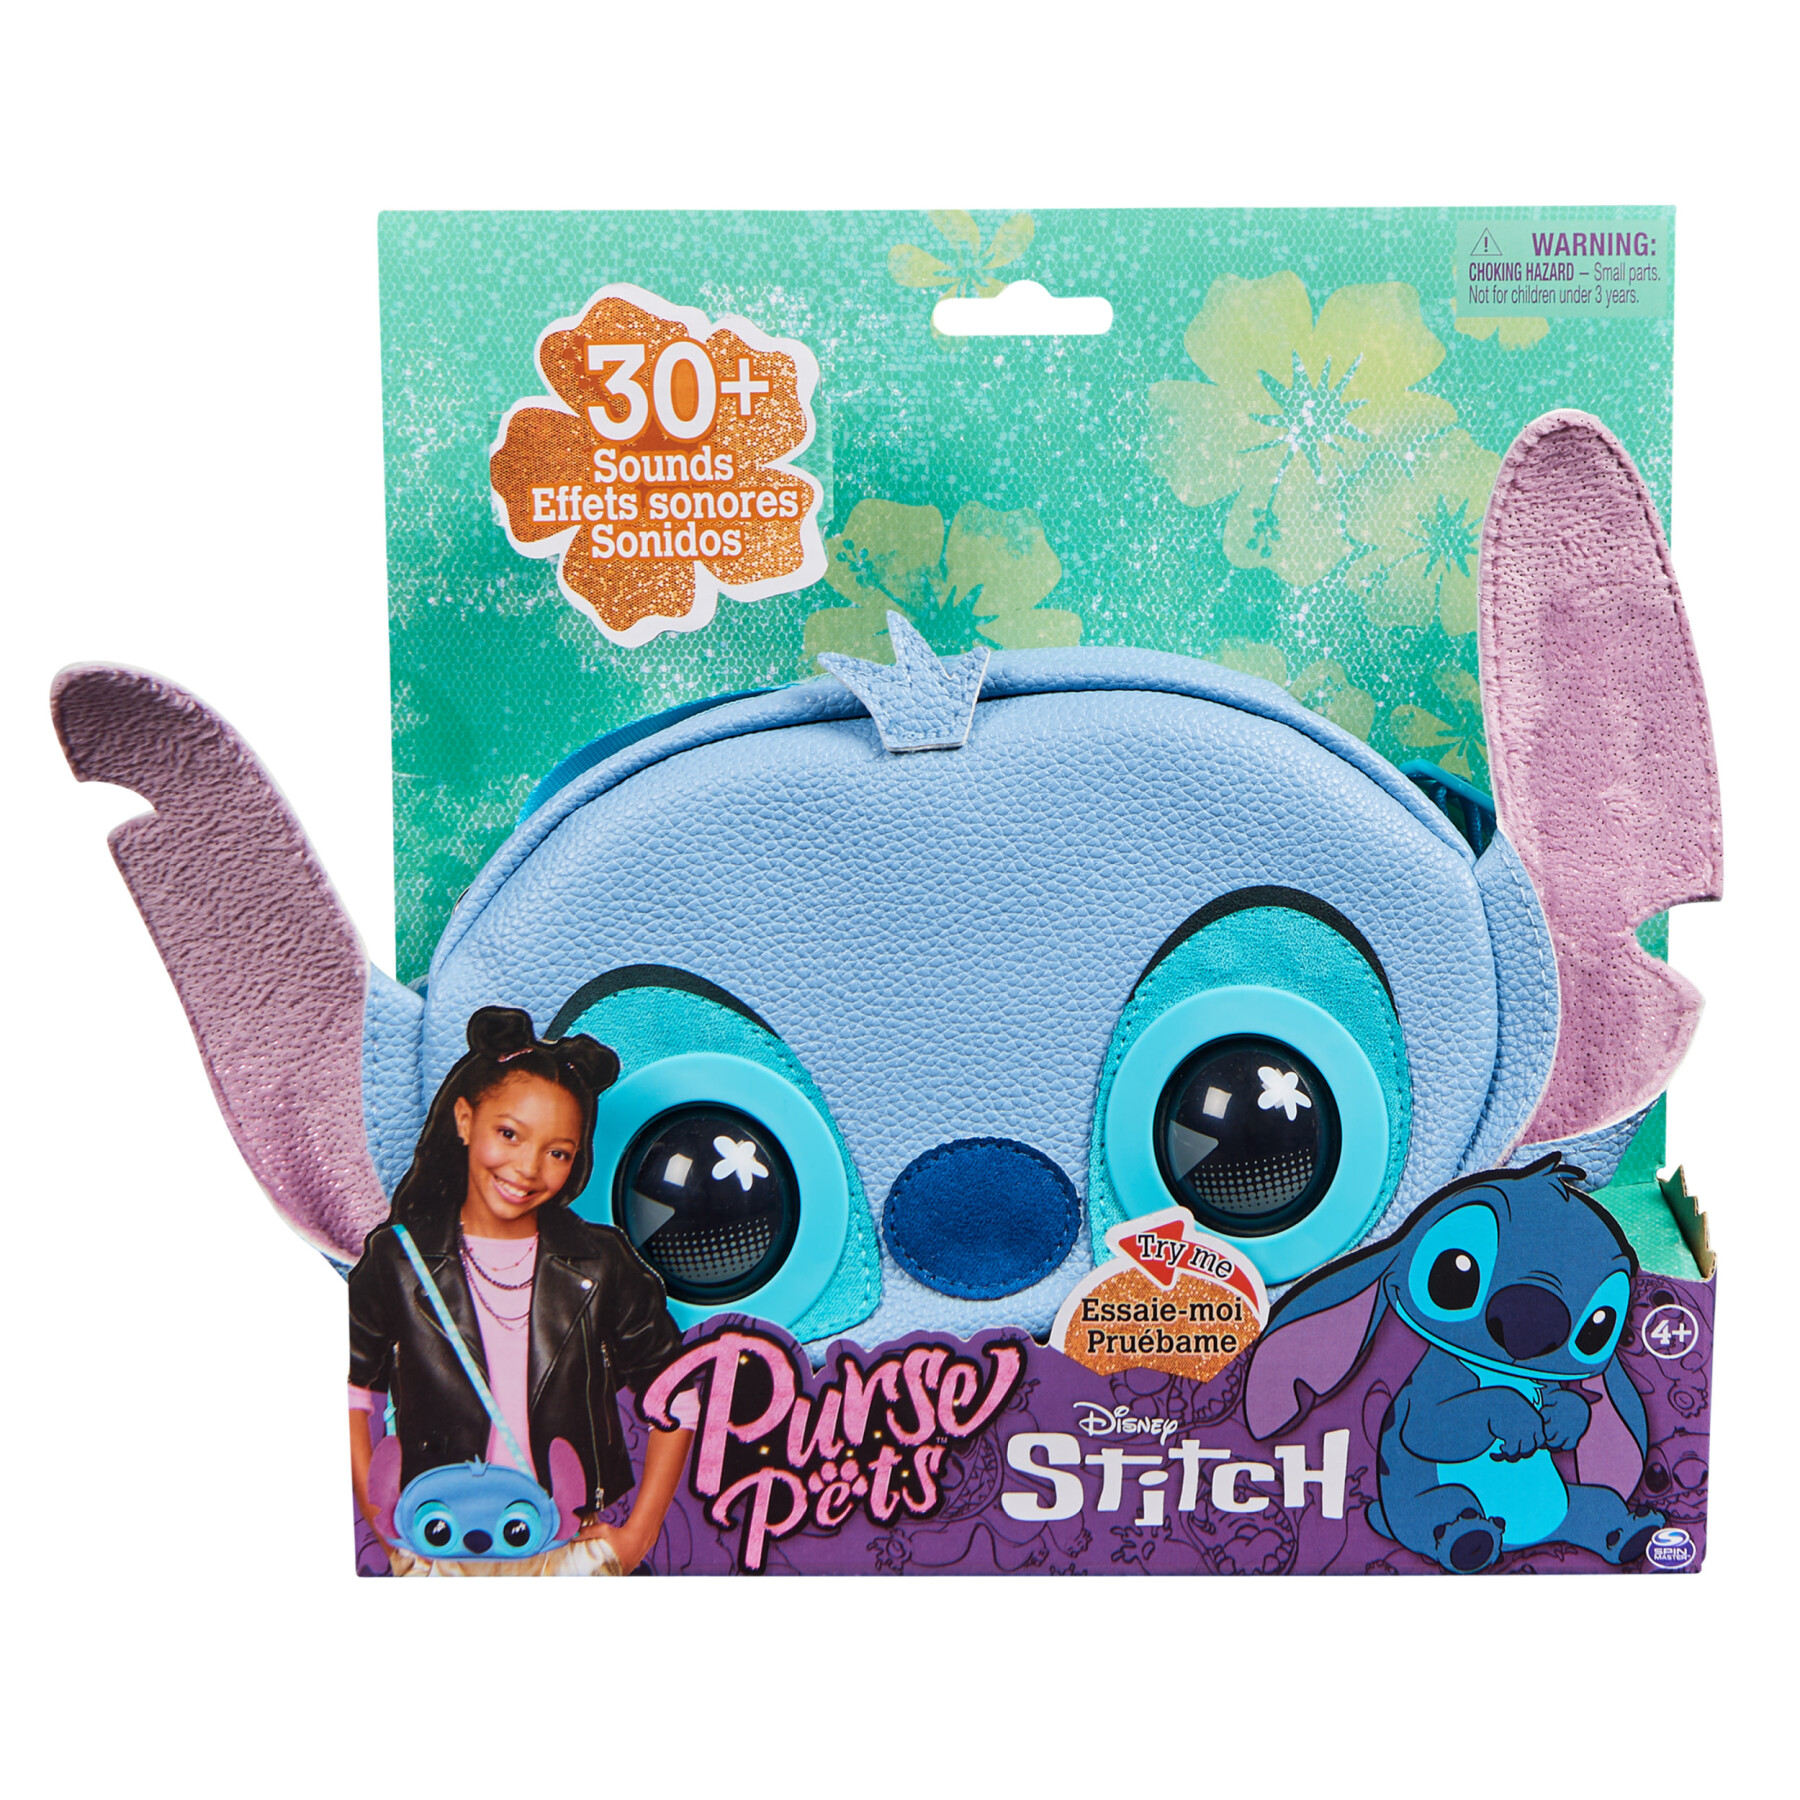 Purse pets, disney stitch, giocattolo interattivo e borsetta con oltre 30 suoni e reazioni, borsetta a tracolla, giocattoli per bambine - PURSE PETS, Disney Stitch